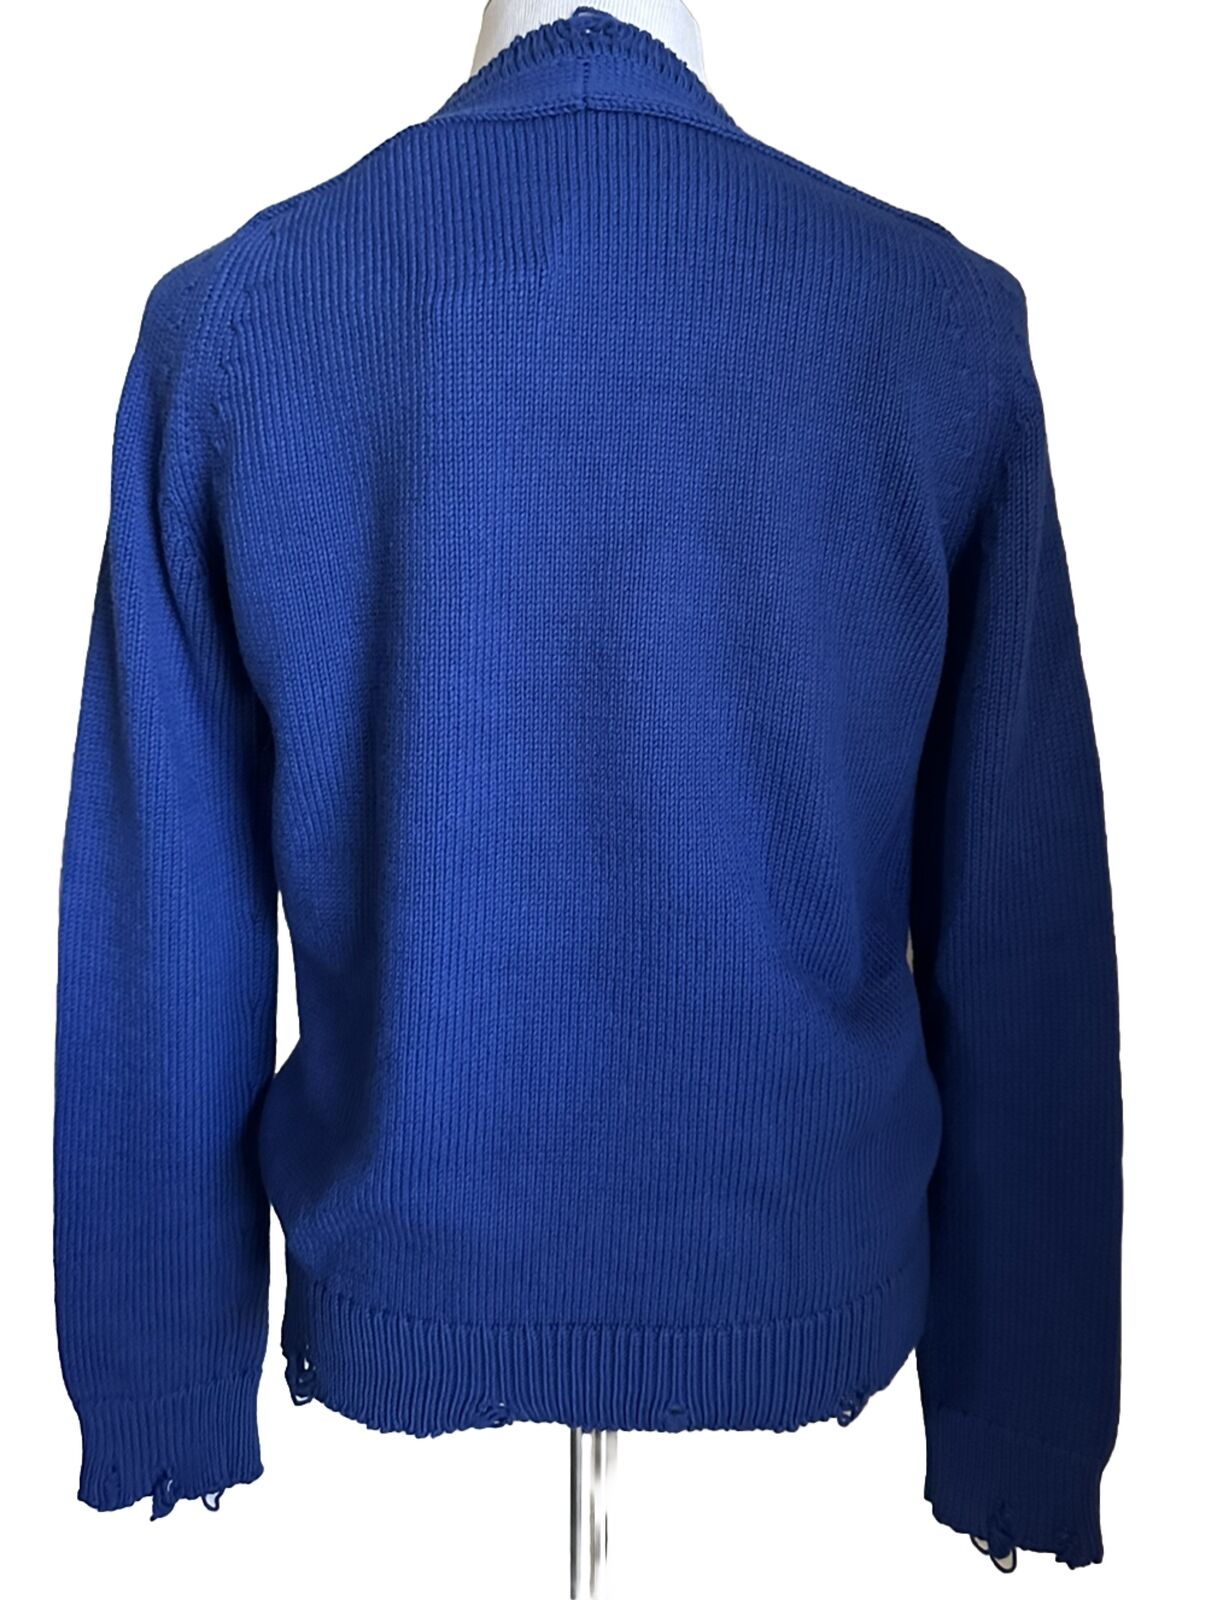 Neu mit Etikett: 890 $ Saint Laurent Herrenpullover mit Rundhalsausschnitt, Blau, Größe XXL, Italien